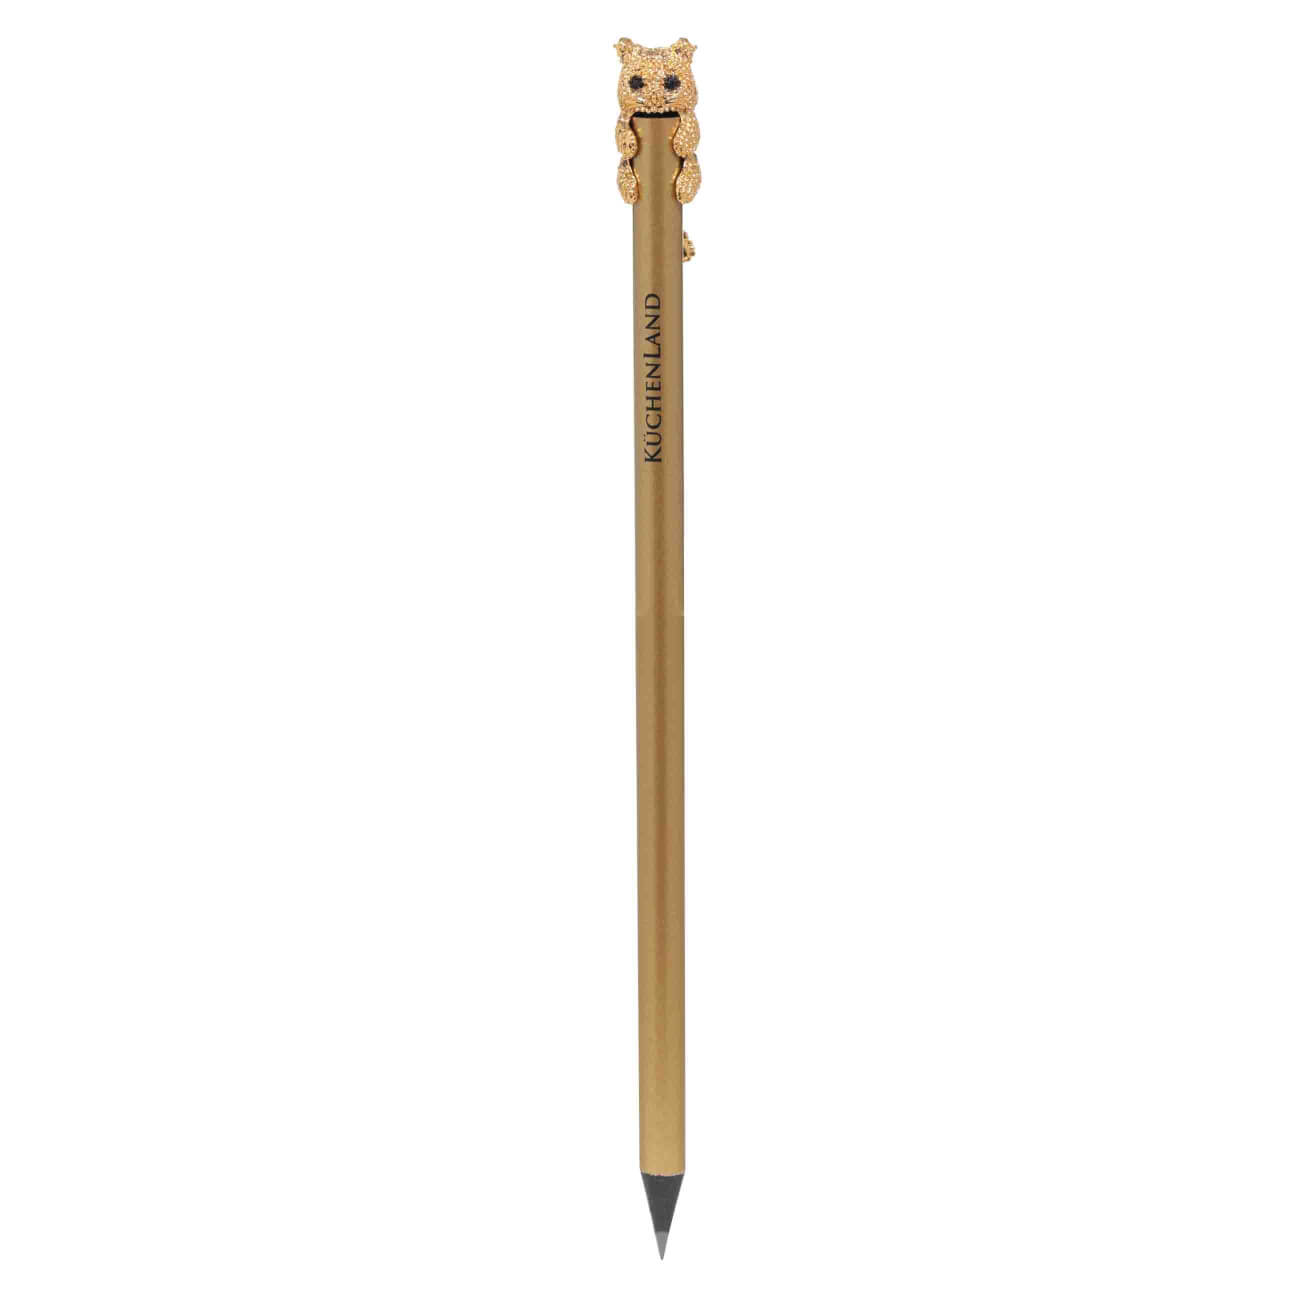 Карандаш, 18 см, чернографитный, с фигуркой, золотистый, Кот, Draw карандаш чернографитный stabilo othello в